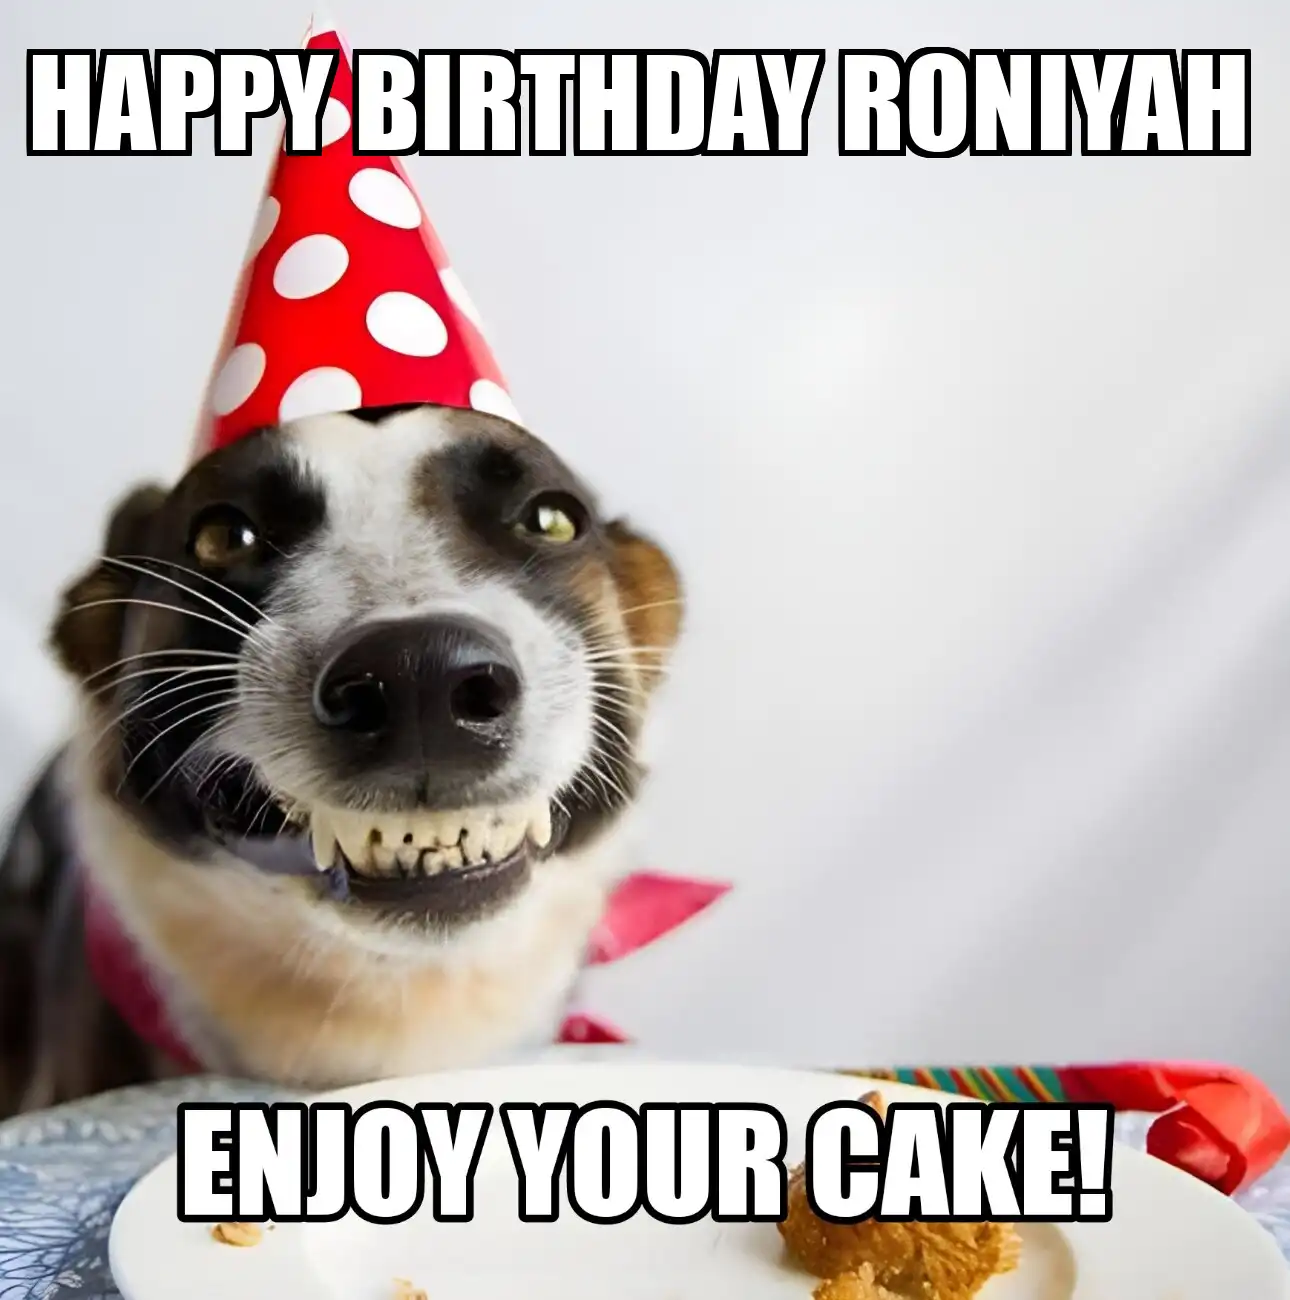 Happy Birthday Roniyah Enjoy Your Cake Dog Meme